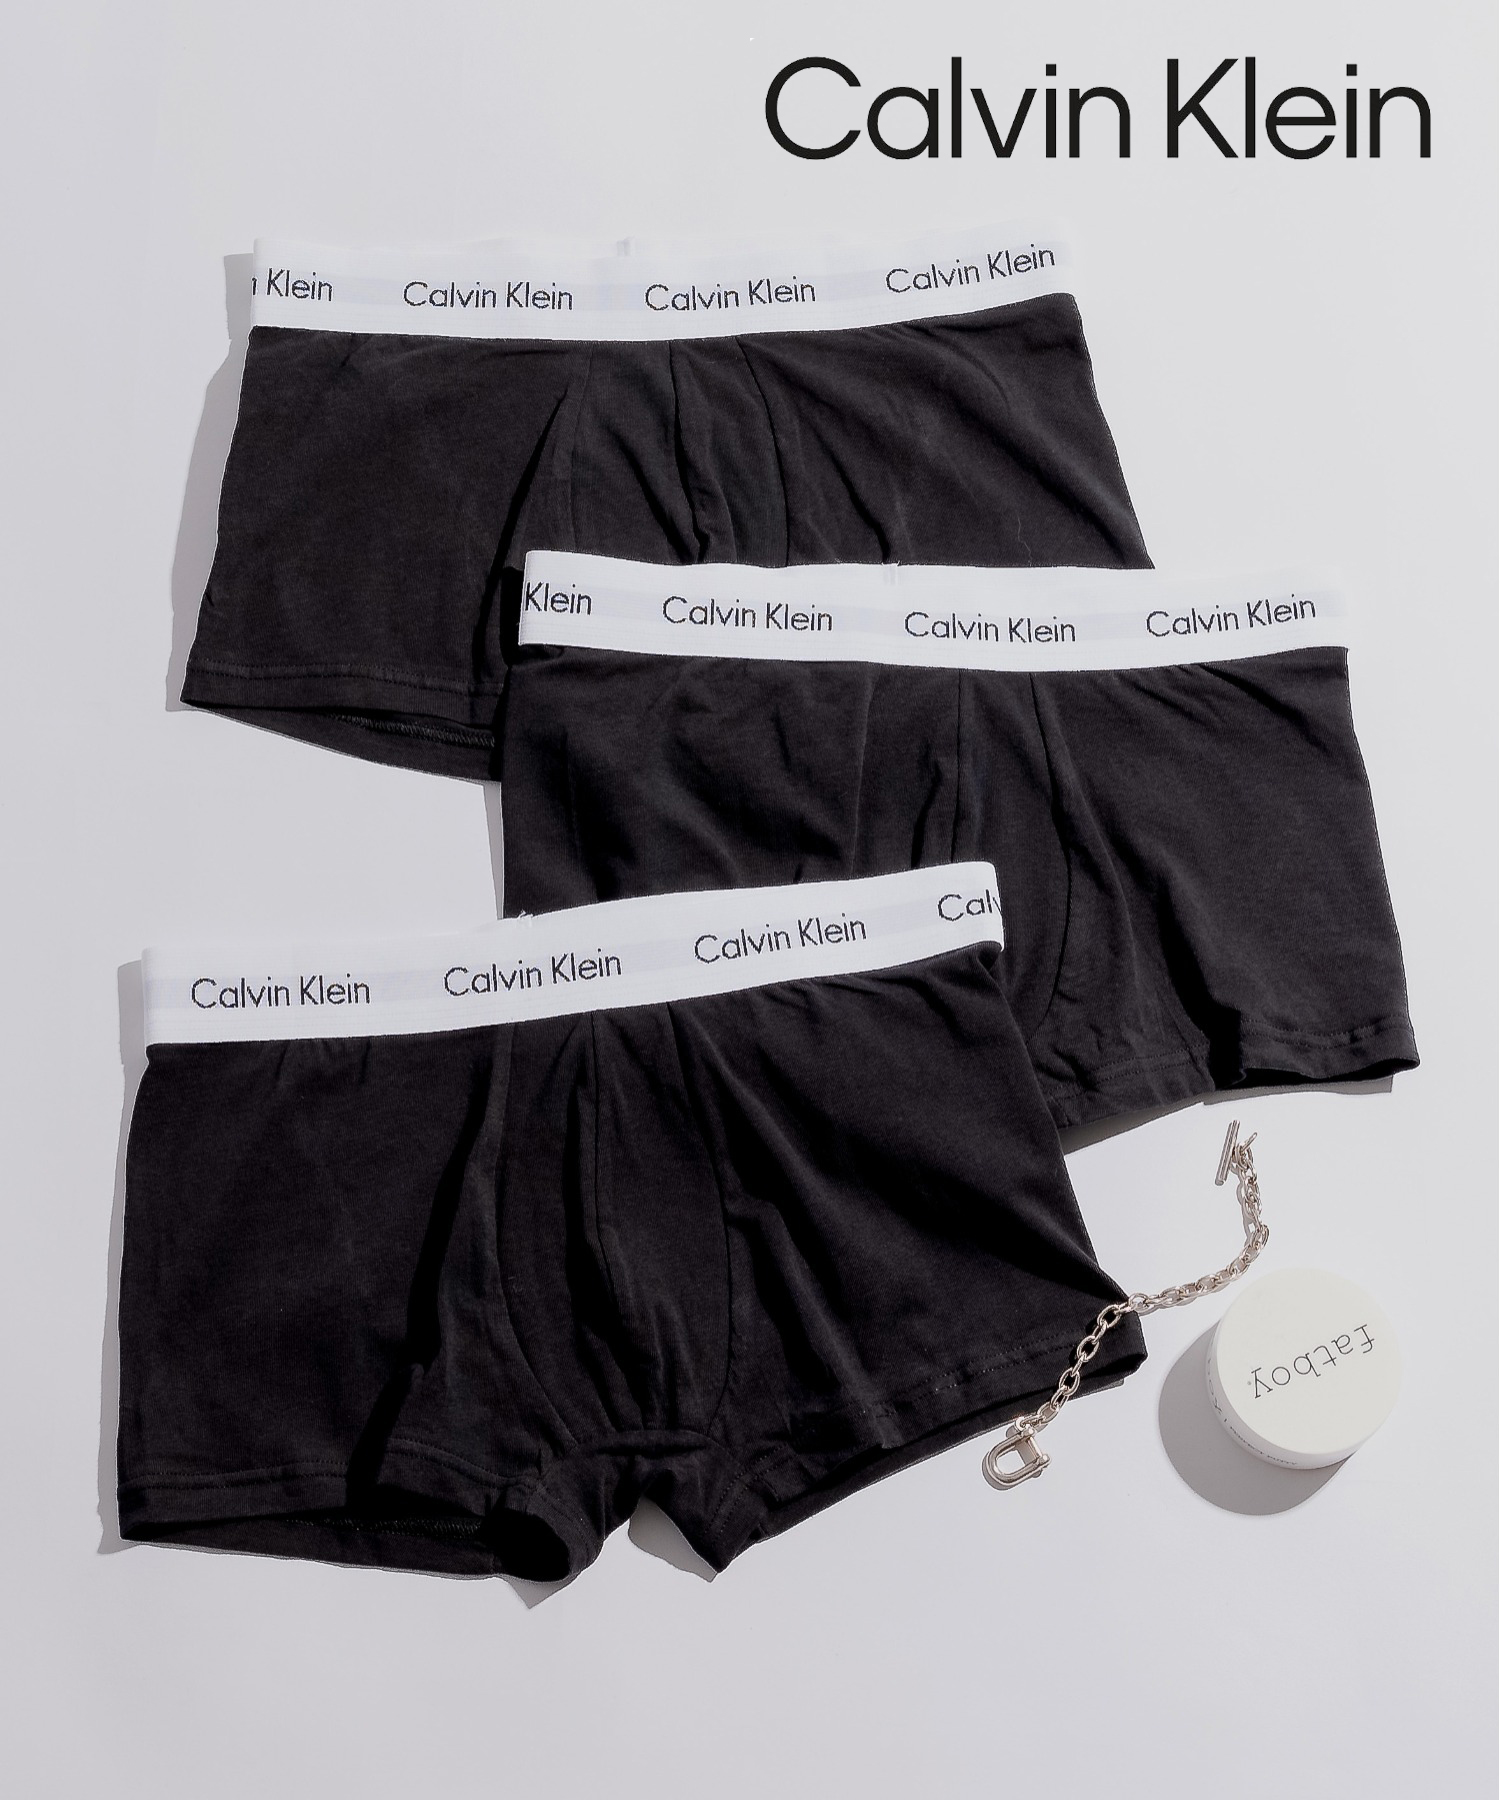 Calvin Klein/【Calvin Klein / カルバンクライン】3枚セット エッセンシャル ローライズボクサーパンツ 父の日 ギフト プレゼント 贈り物/505228888